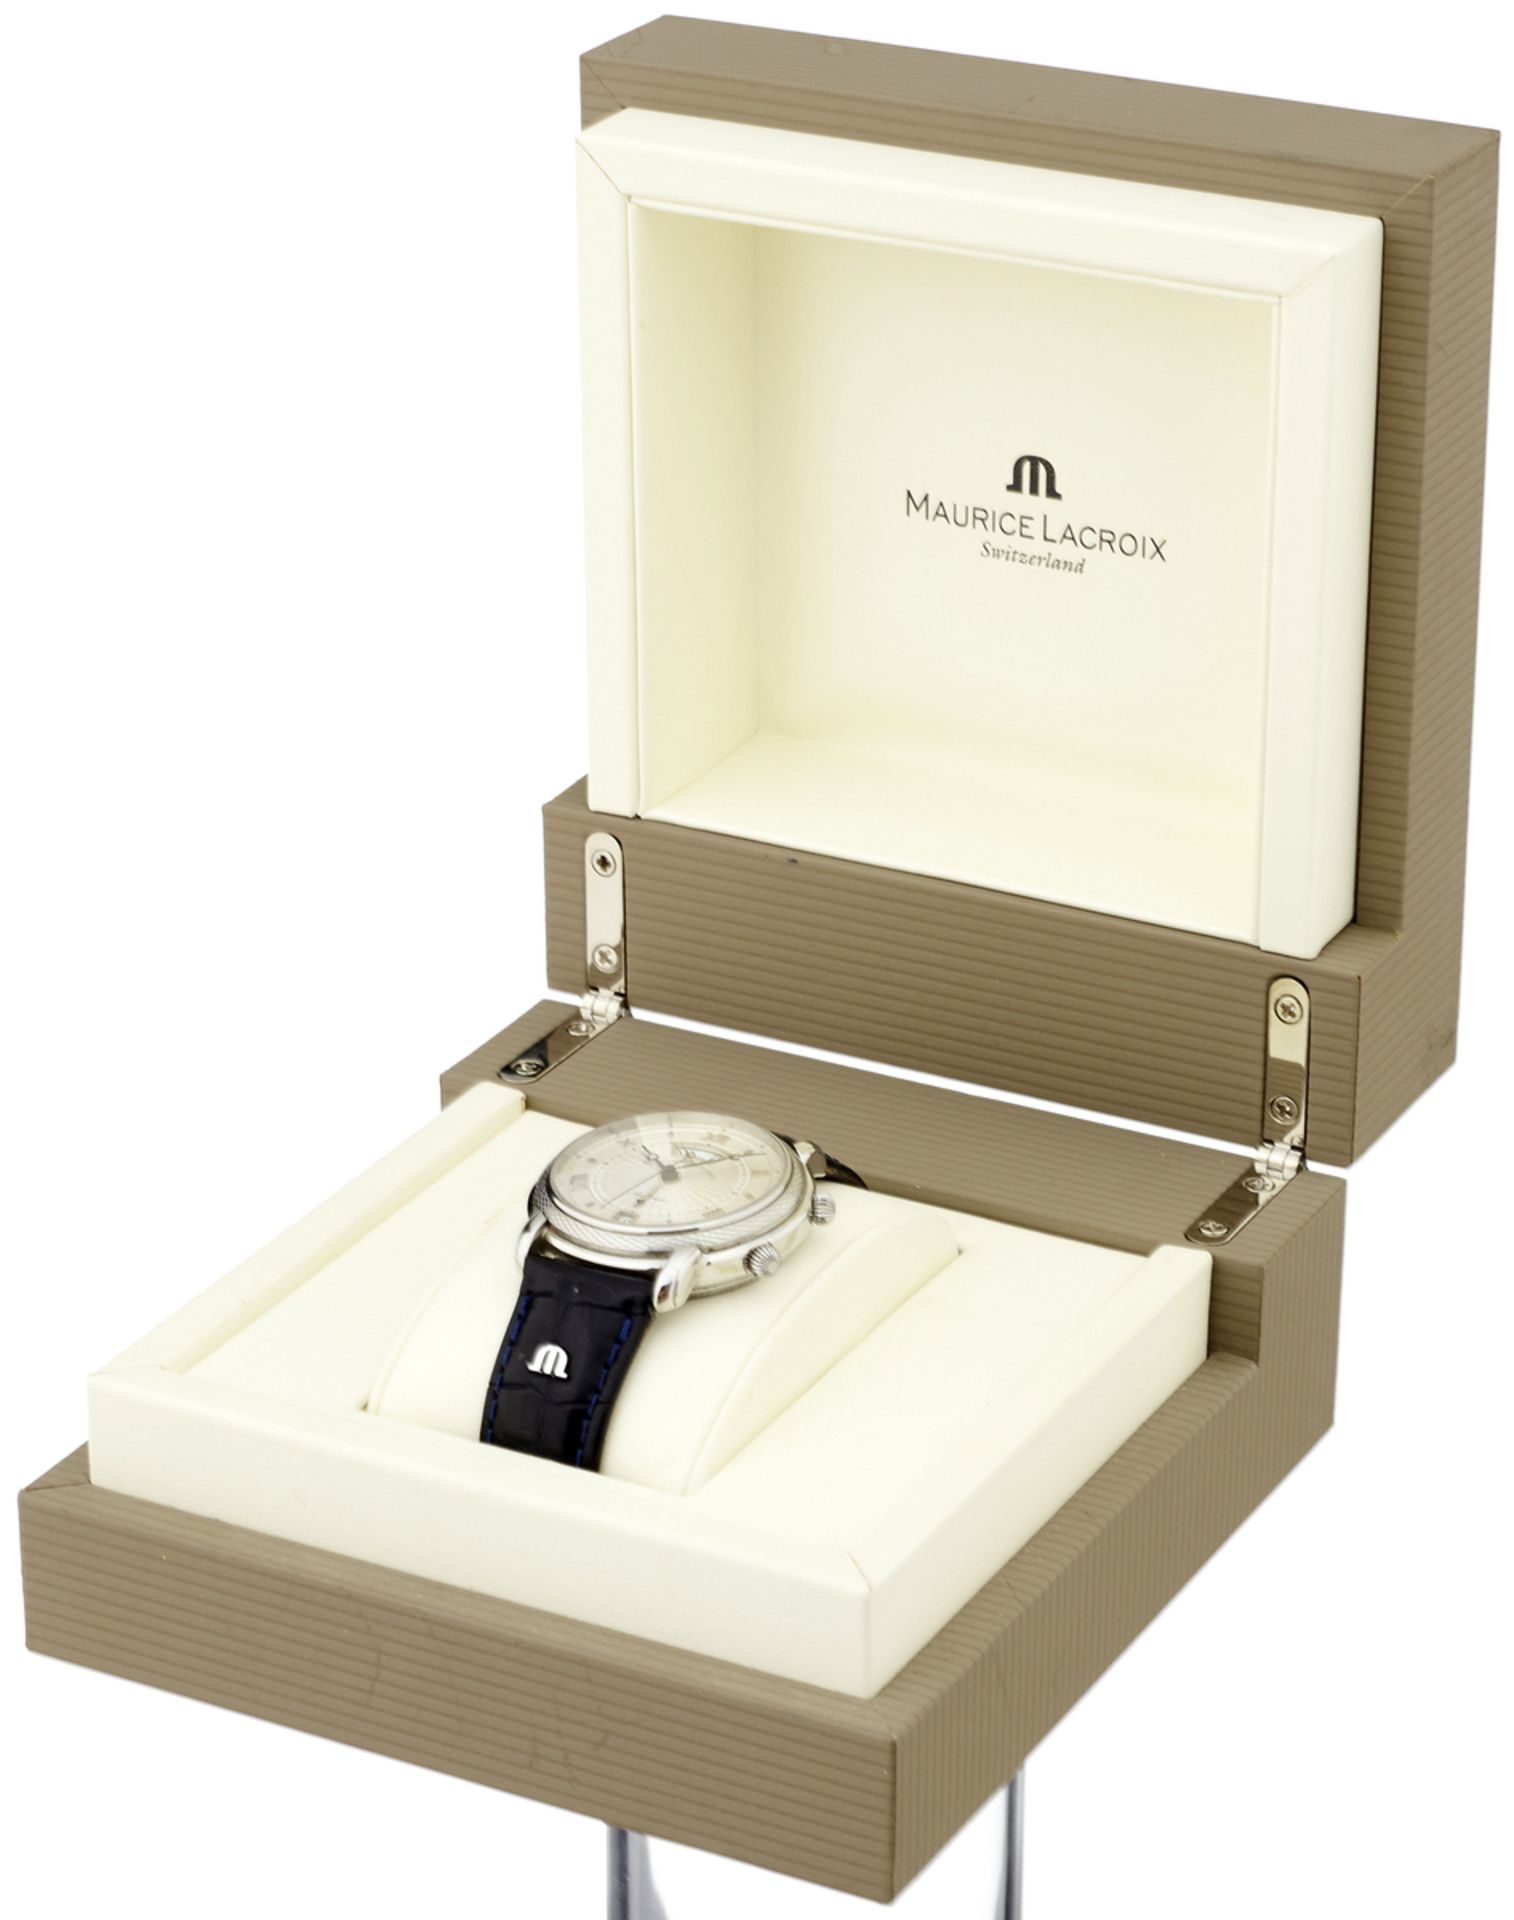 Armbanduhr "Maurice Lacroix"Stahlgehäuse mit Sichtboden. Silberfarbenes, guillochiertes - Bild 4 aus 4